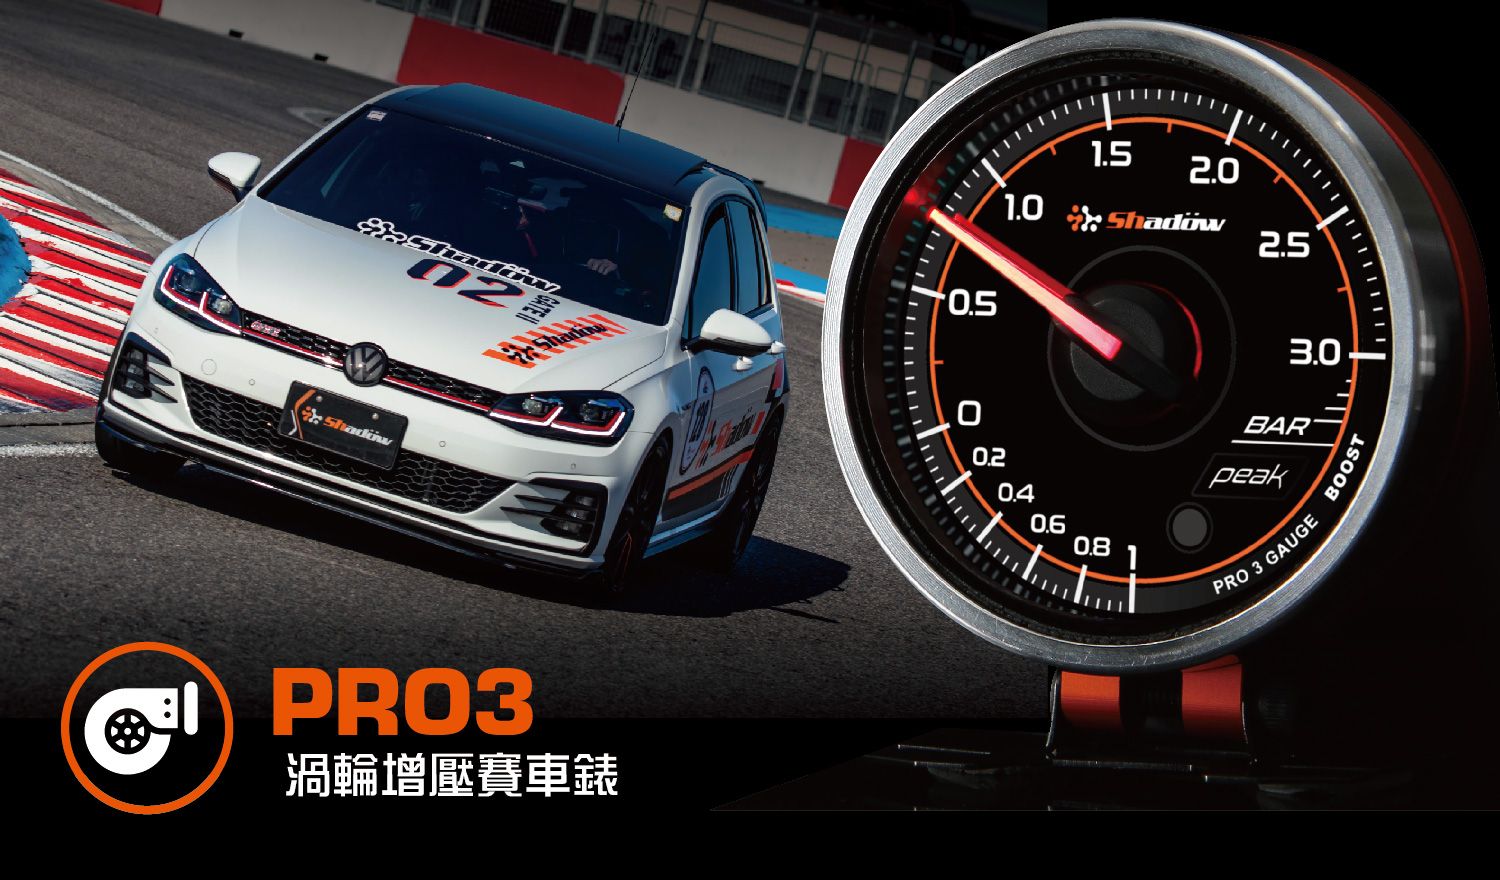 涡轮增压赛车表测量范围为- 1.0 Bar to 3.0 Bar.